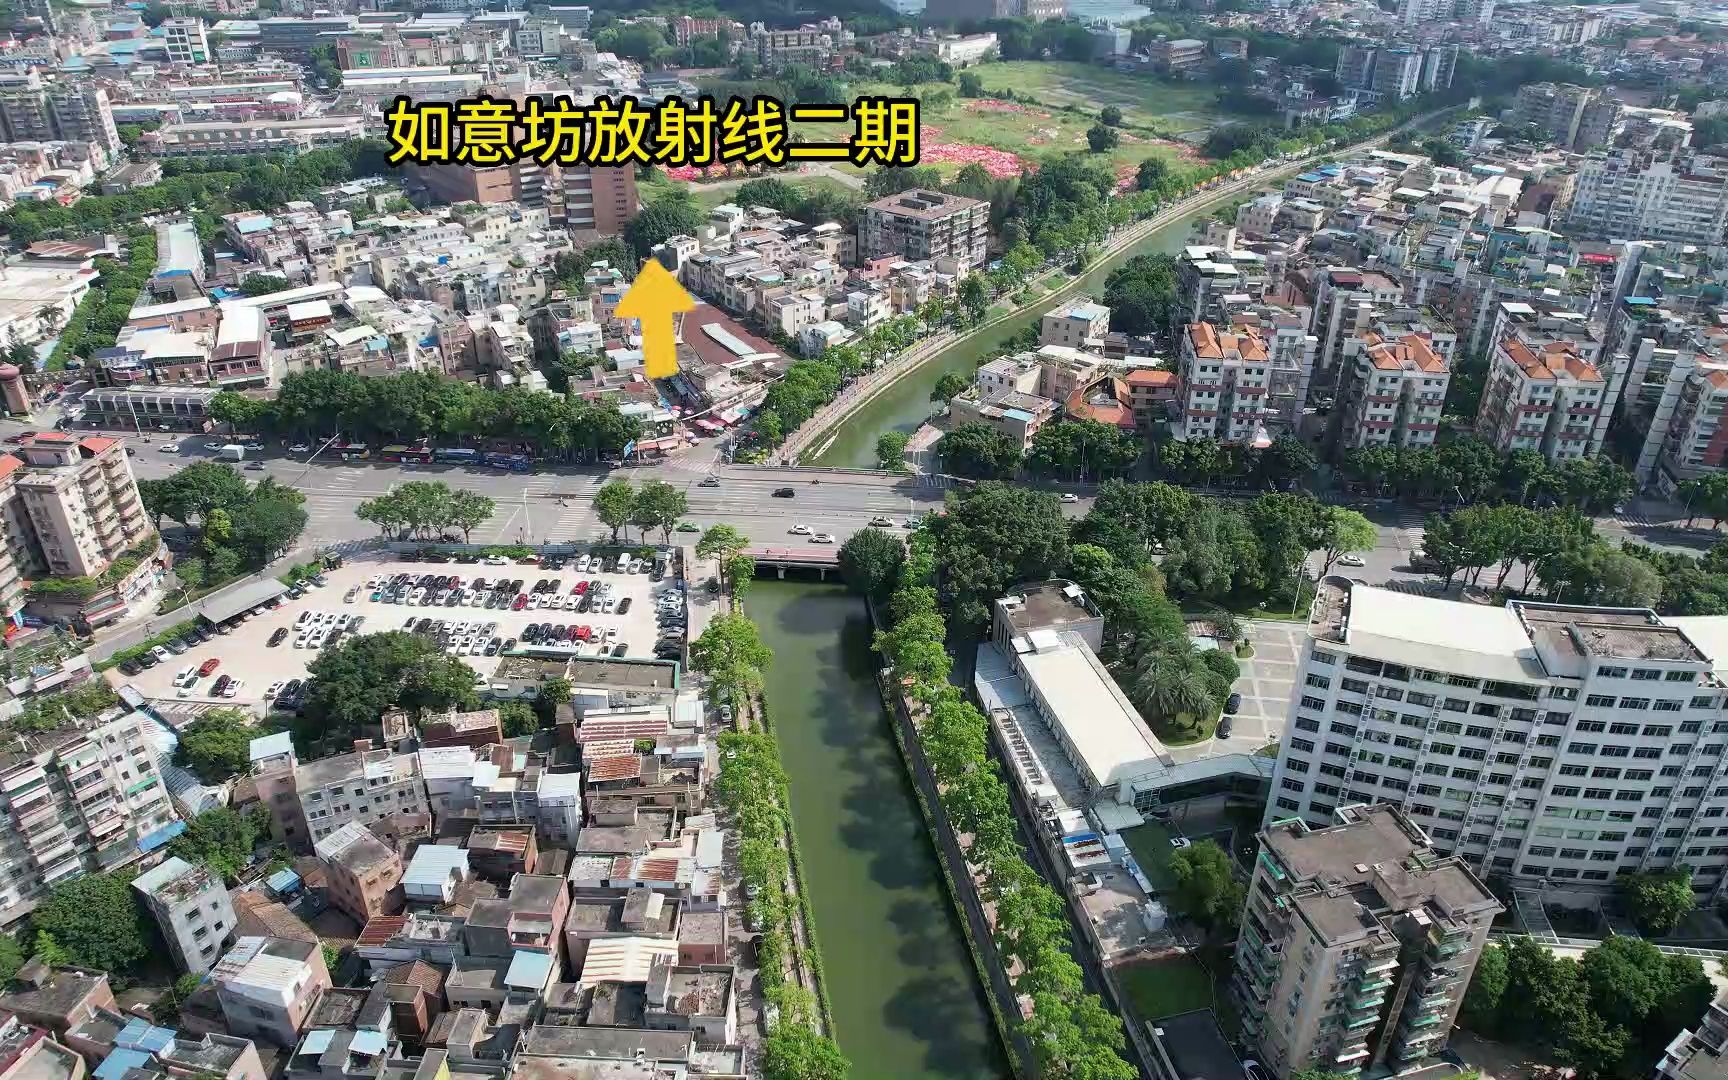 广州市内环路如意坊放射线立交及过江隧道建设进展202306